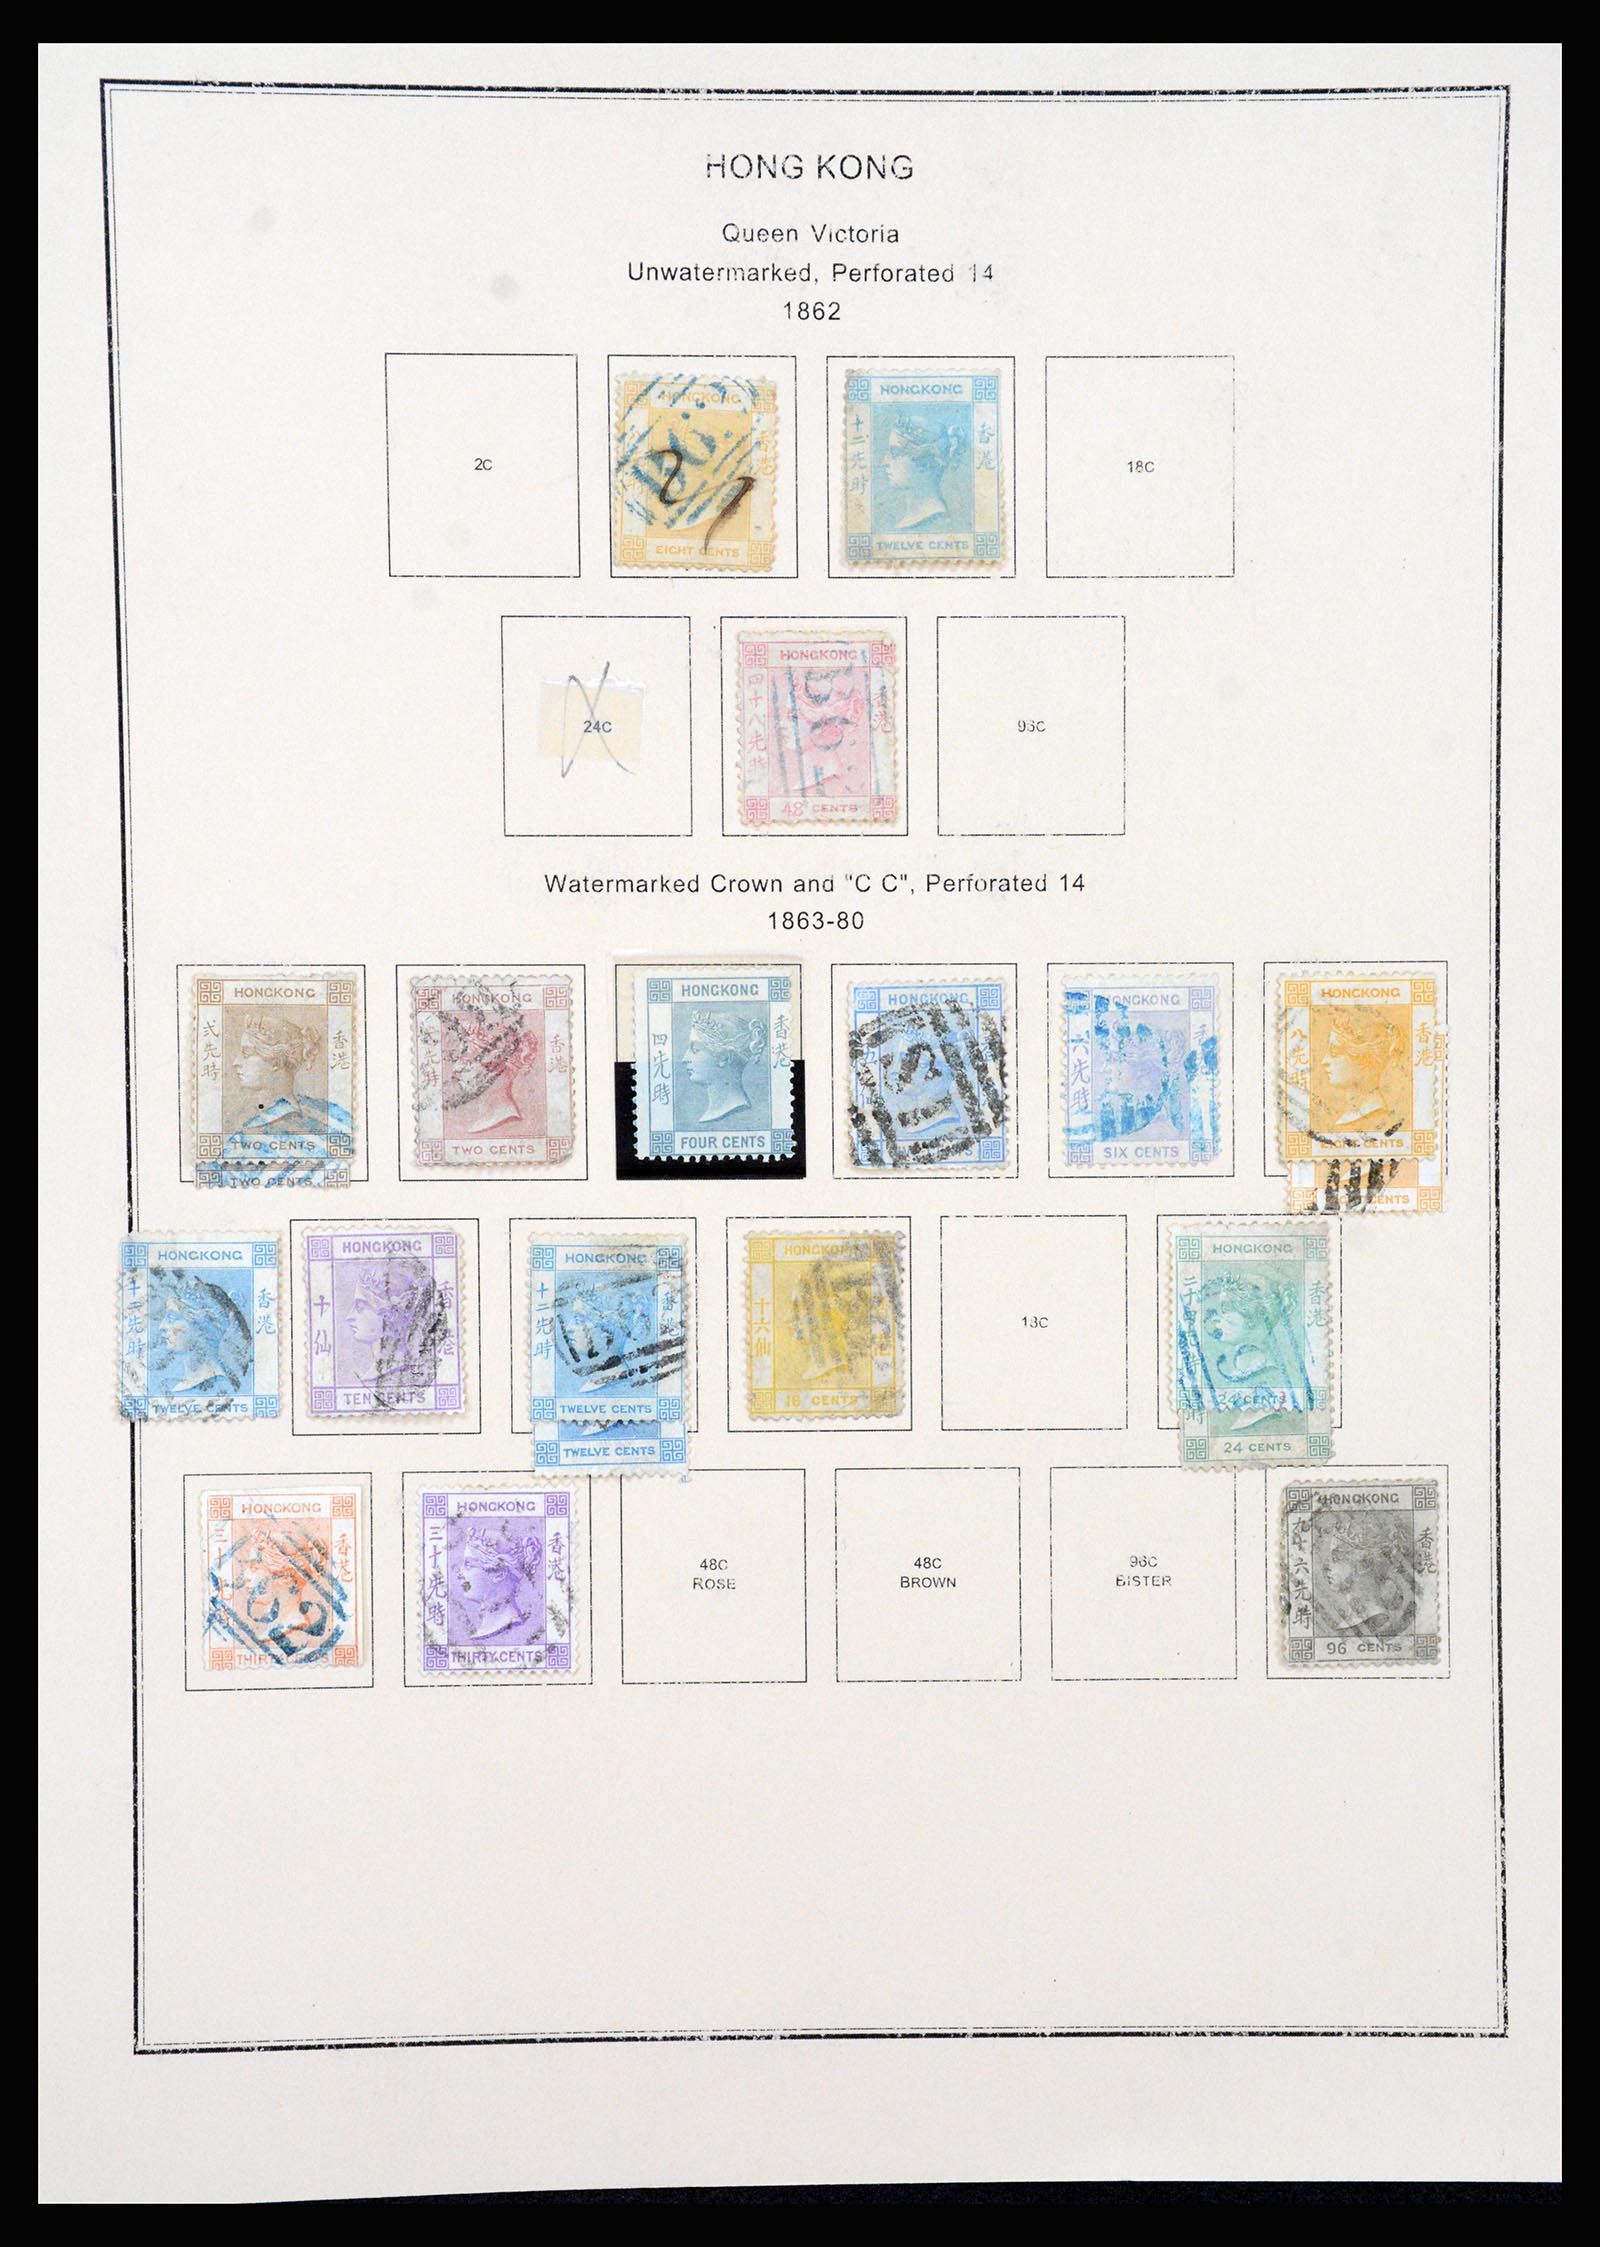 37210 001 - Stamp collection 37210 Hong Kong 1862-2000.